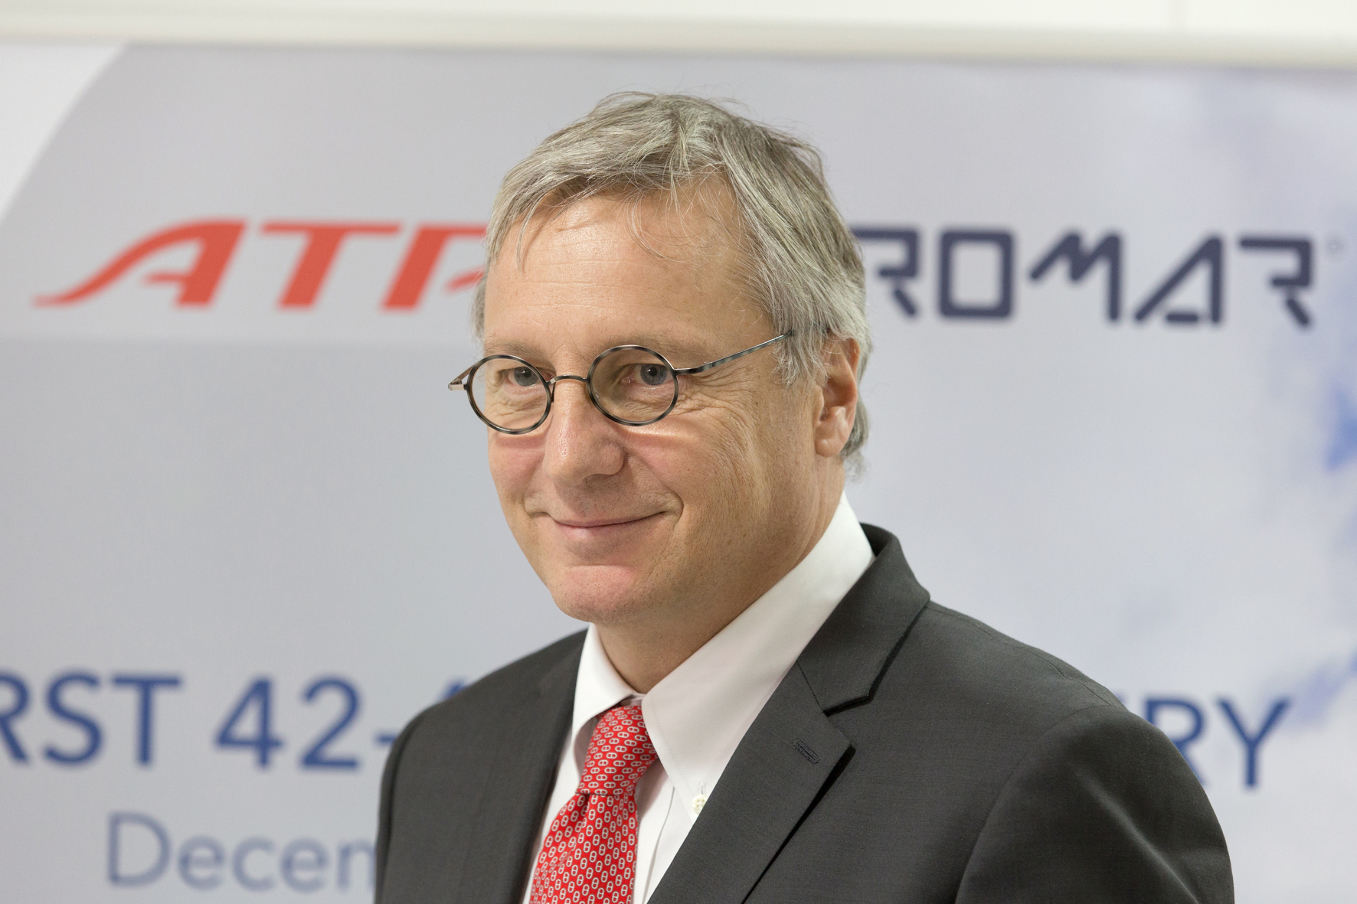 ATR CEO Christian Scherer sees demand for larger aircraft